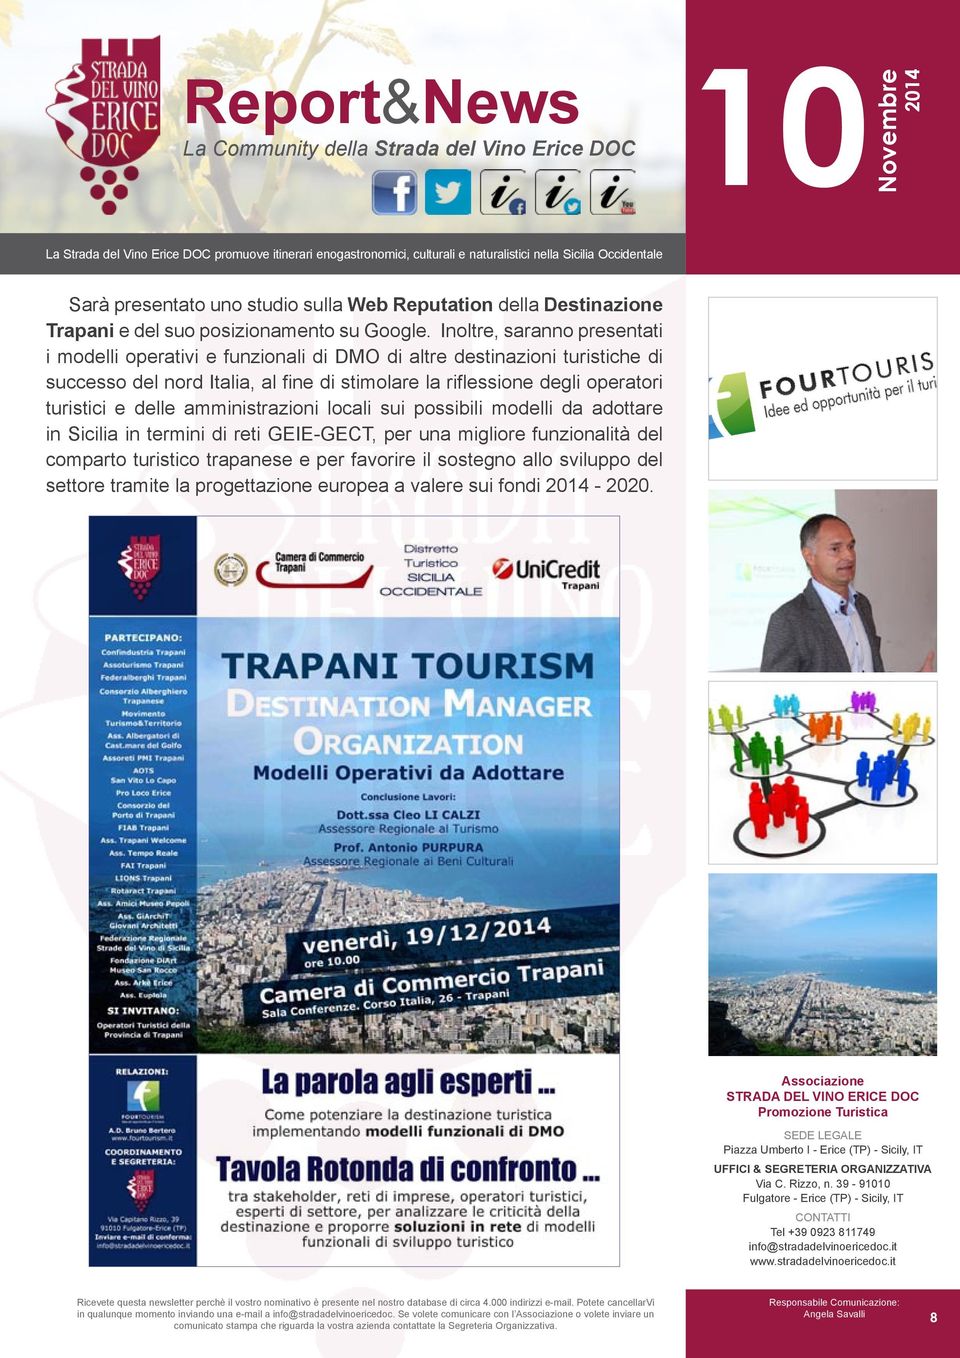 la riflessione degli operatori turistici e delle amministrazioni locali sui possibili modelli da adottare in Sicilia in termini di reti GEIE-GECT, per